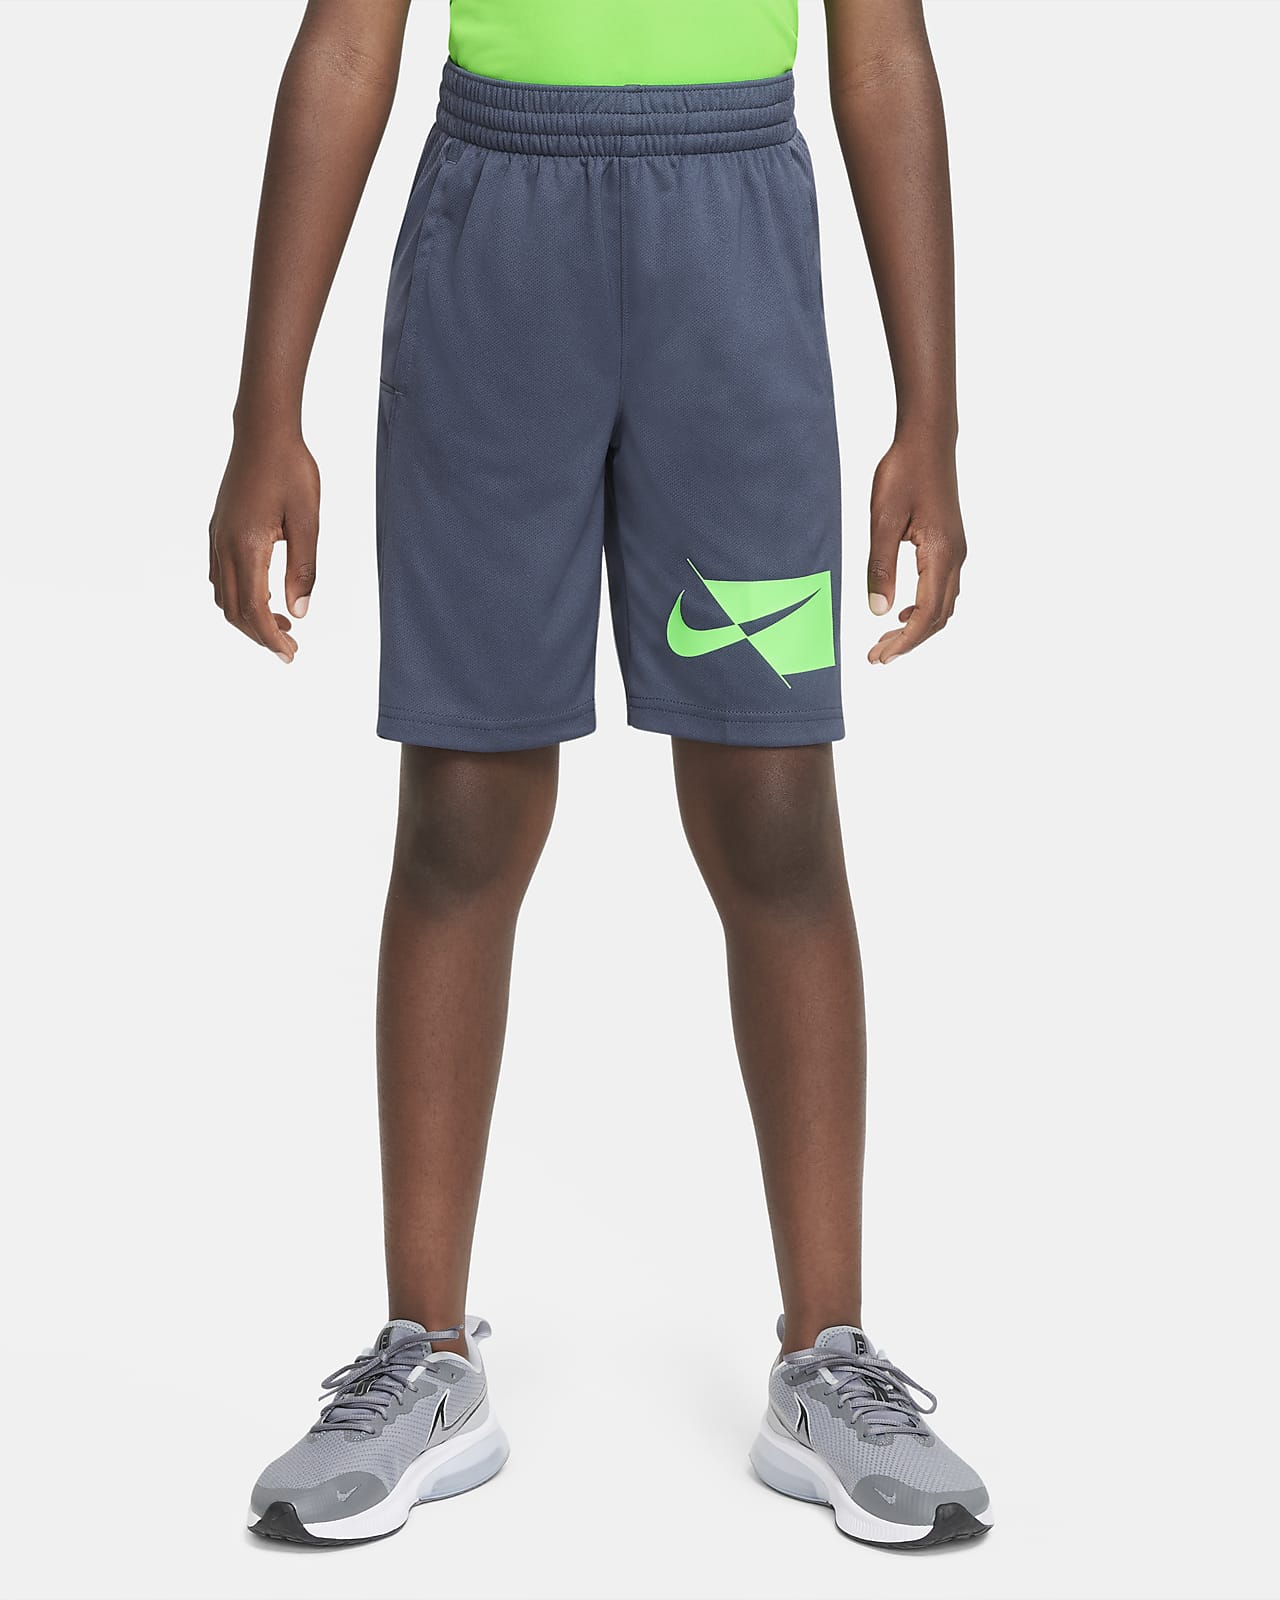 กางเกงเทรนนิ่งขาสั้นเด็กโต Nike Dri-FIT (ชาย)